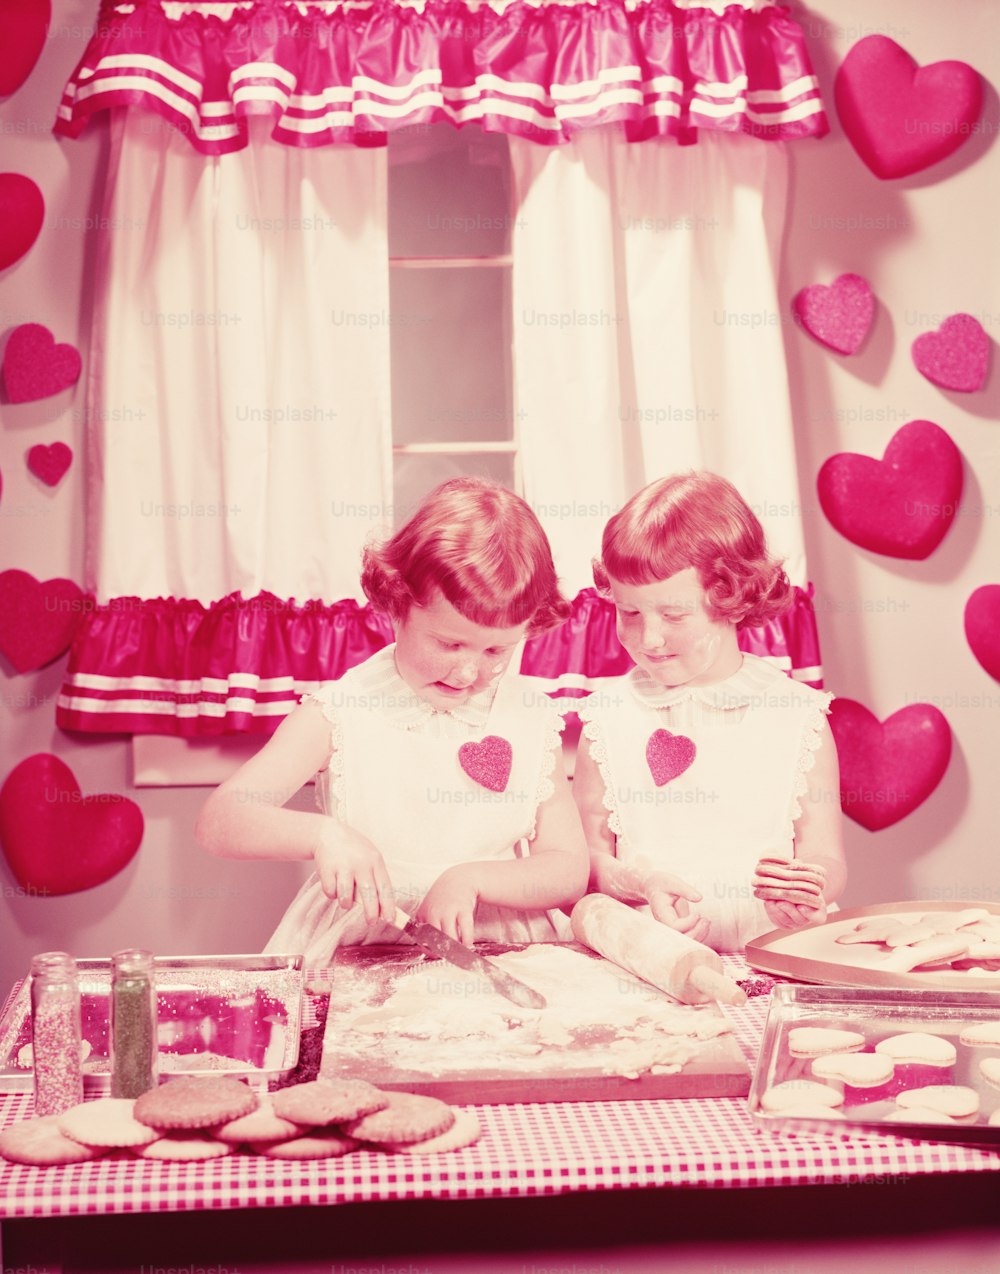 ESTADOS UNIDOS - CIRCA 1950s: Chicas gemelas en la cocina, horneando galletas de San Valentín.